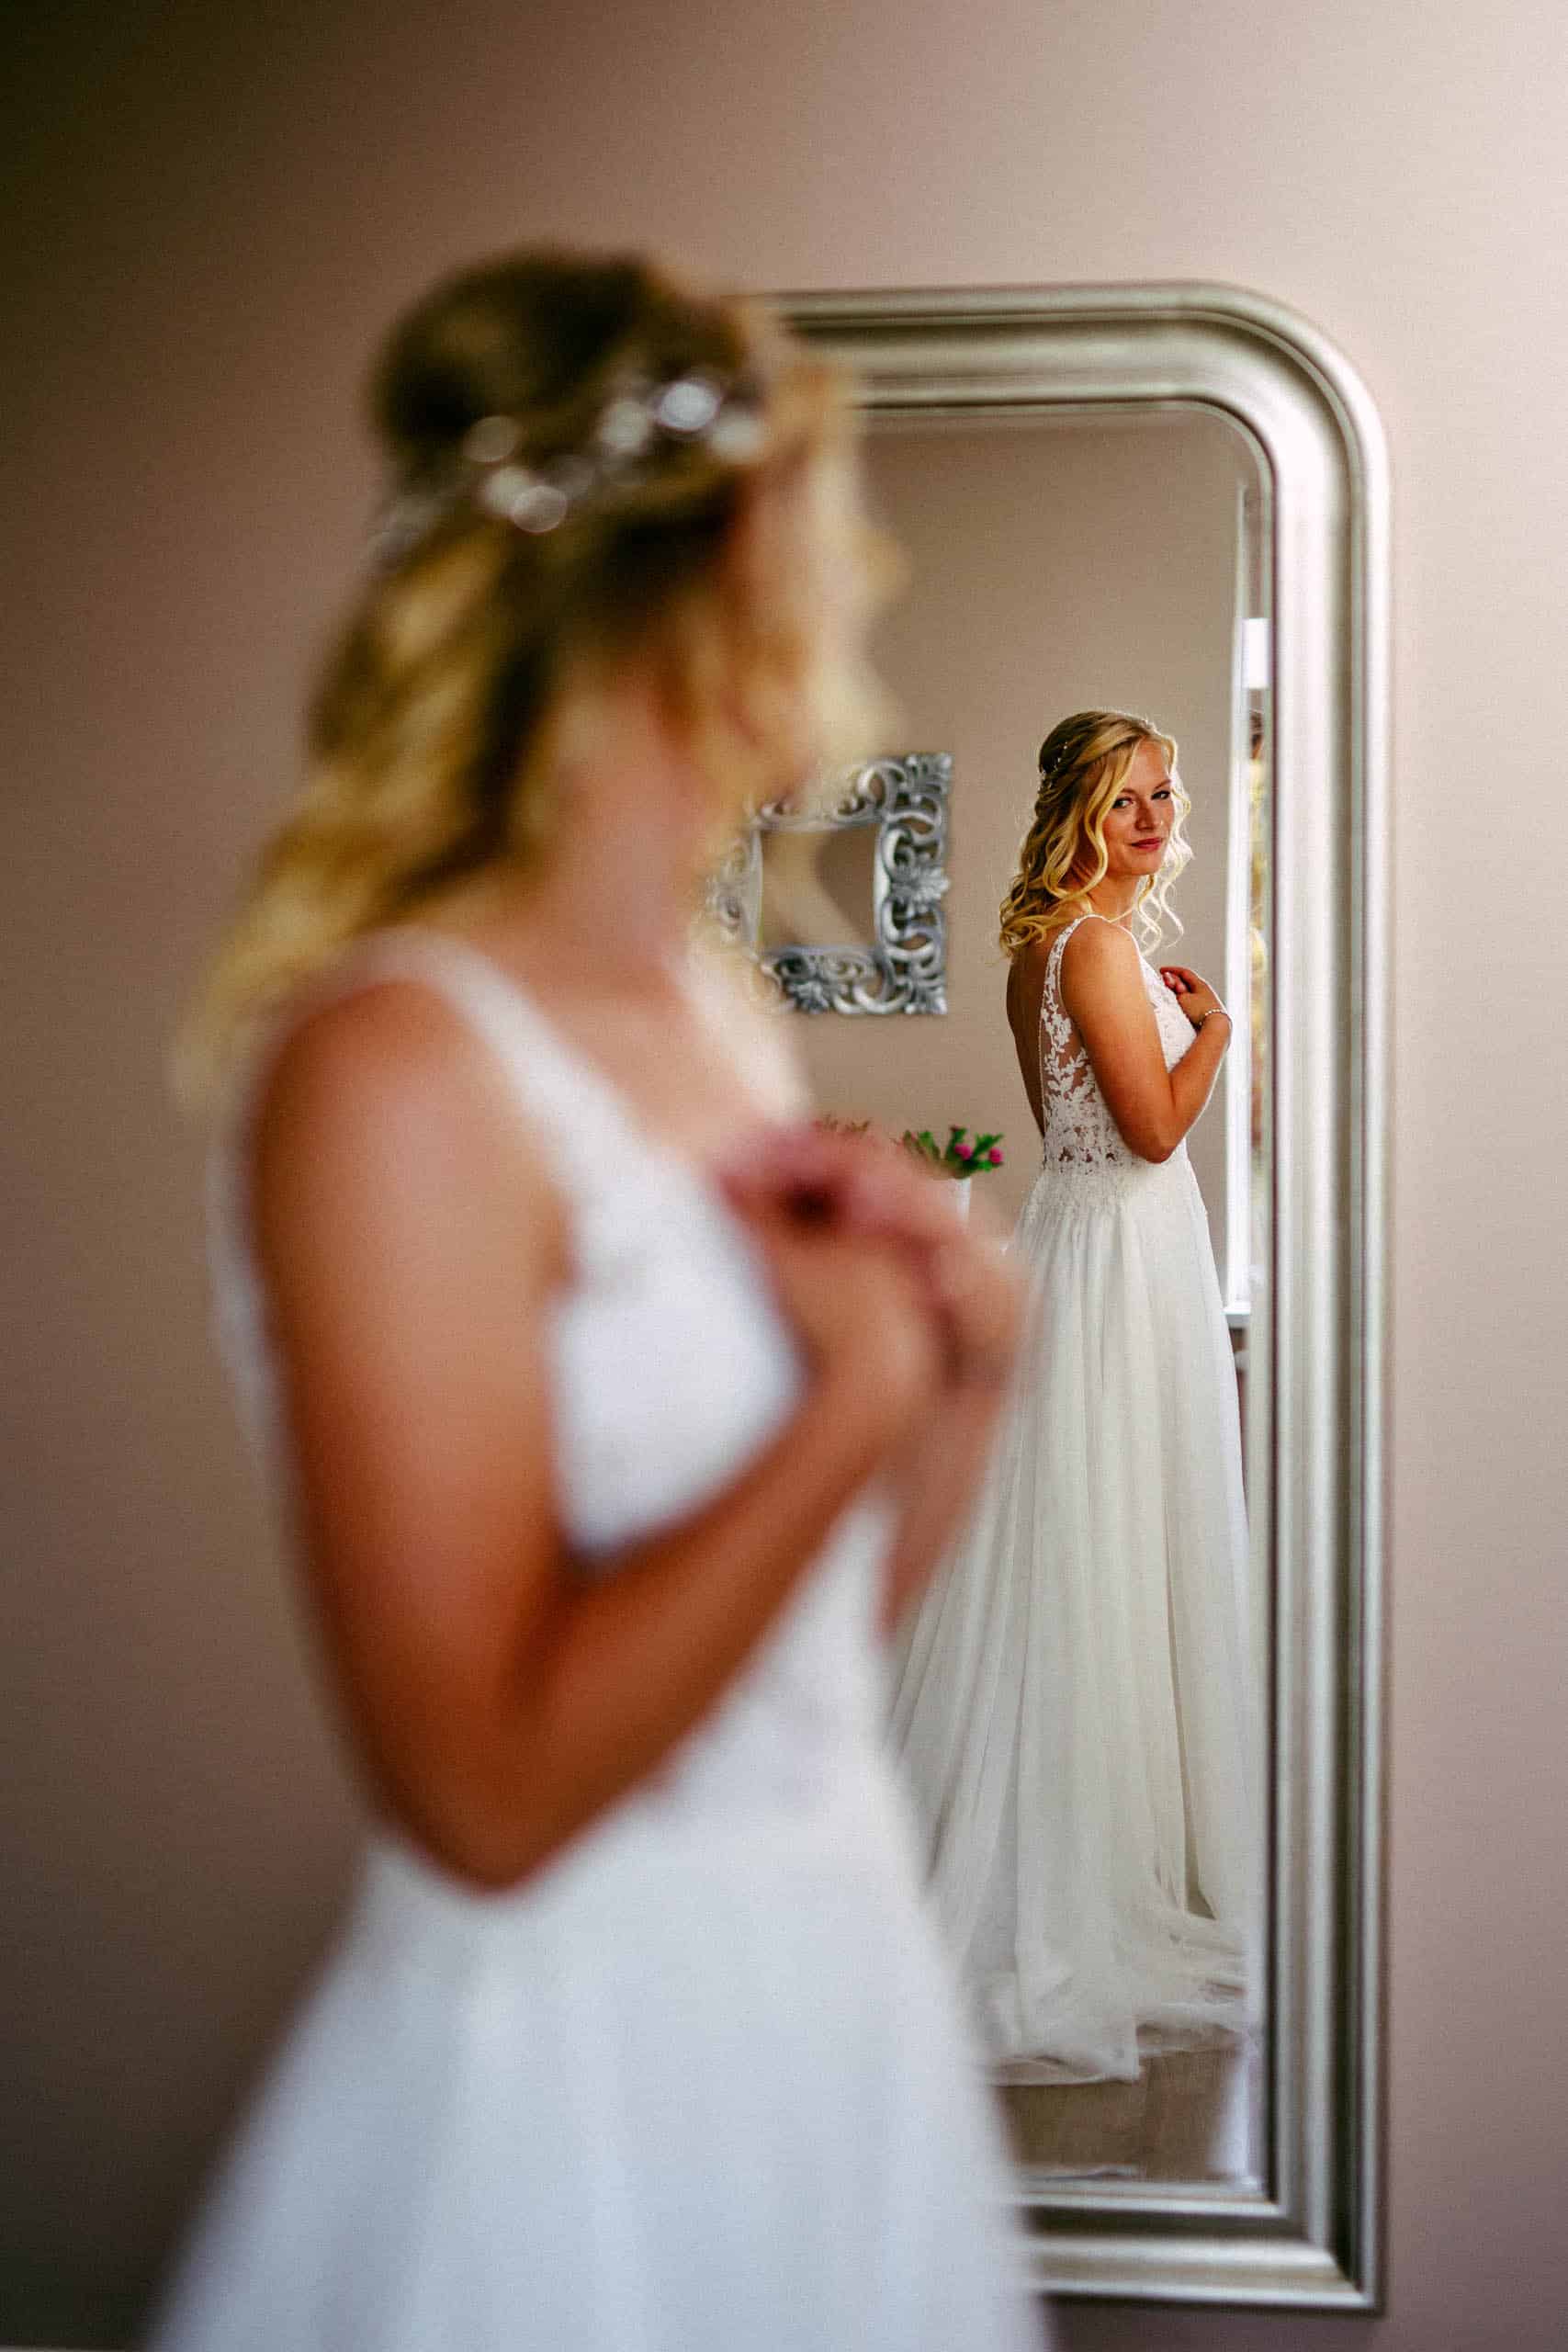 Een bruid in trouwjurk die zichzelf in de spiegel bekijkt, terwijl ze verwijst naar haar bruiloftchecklist.